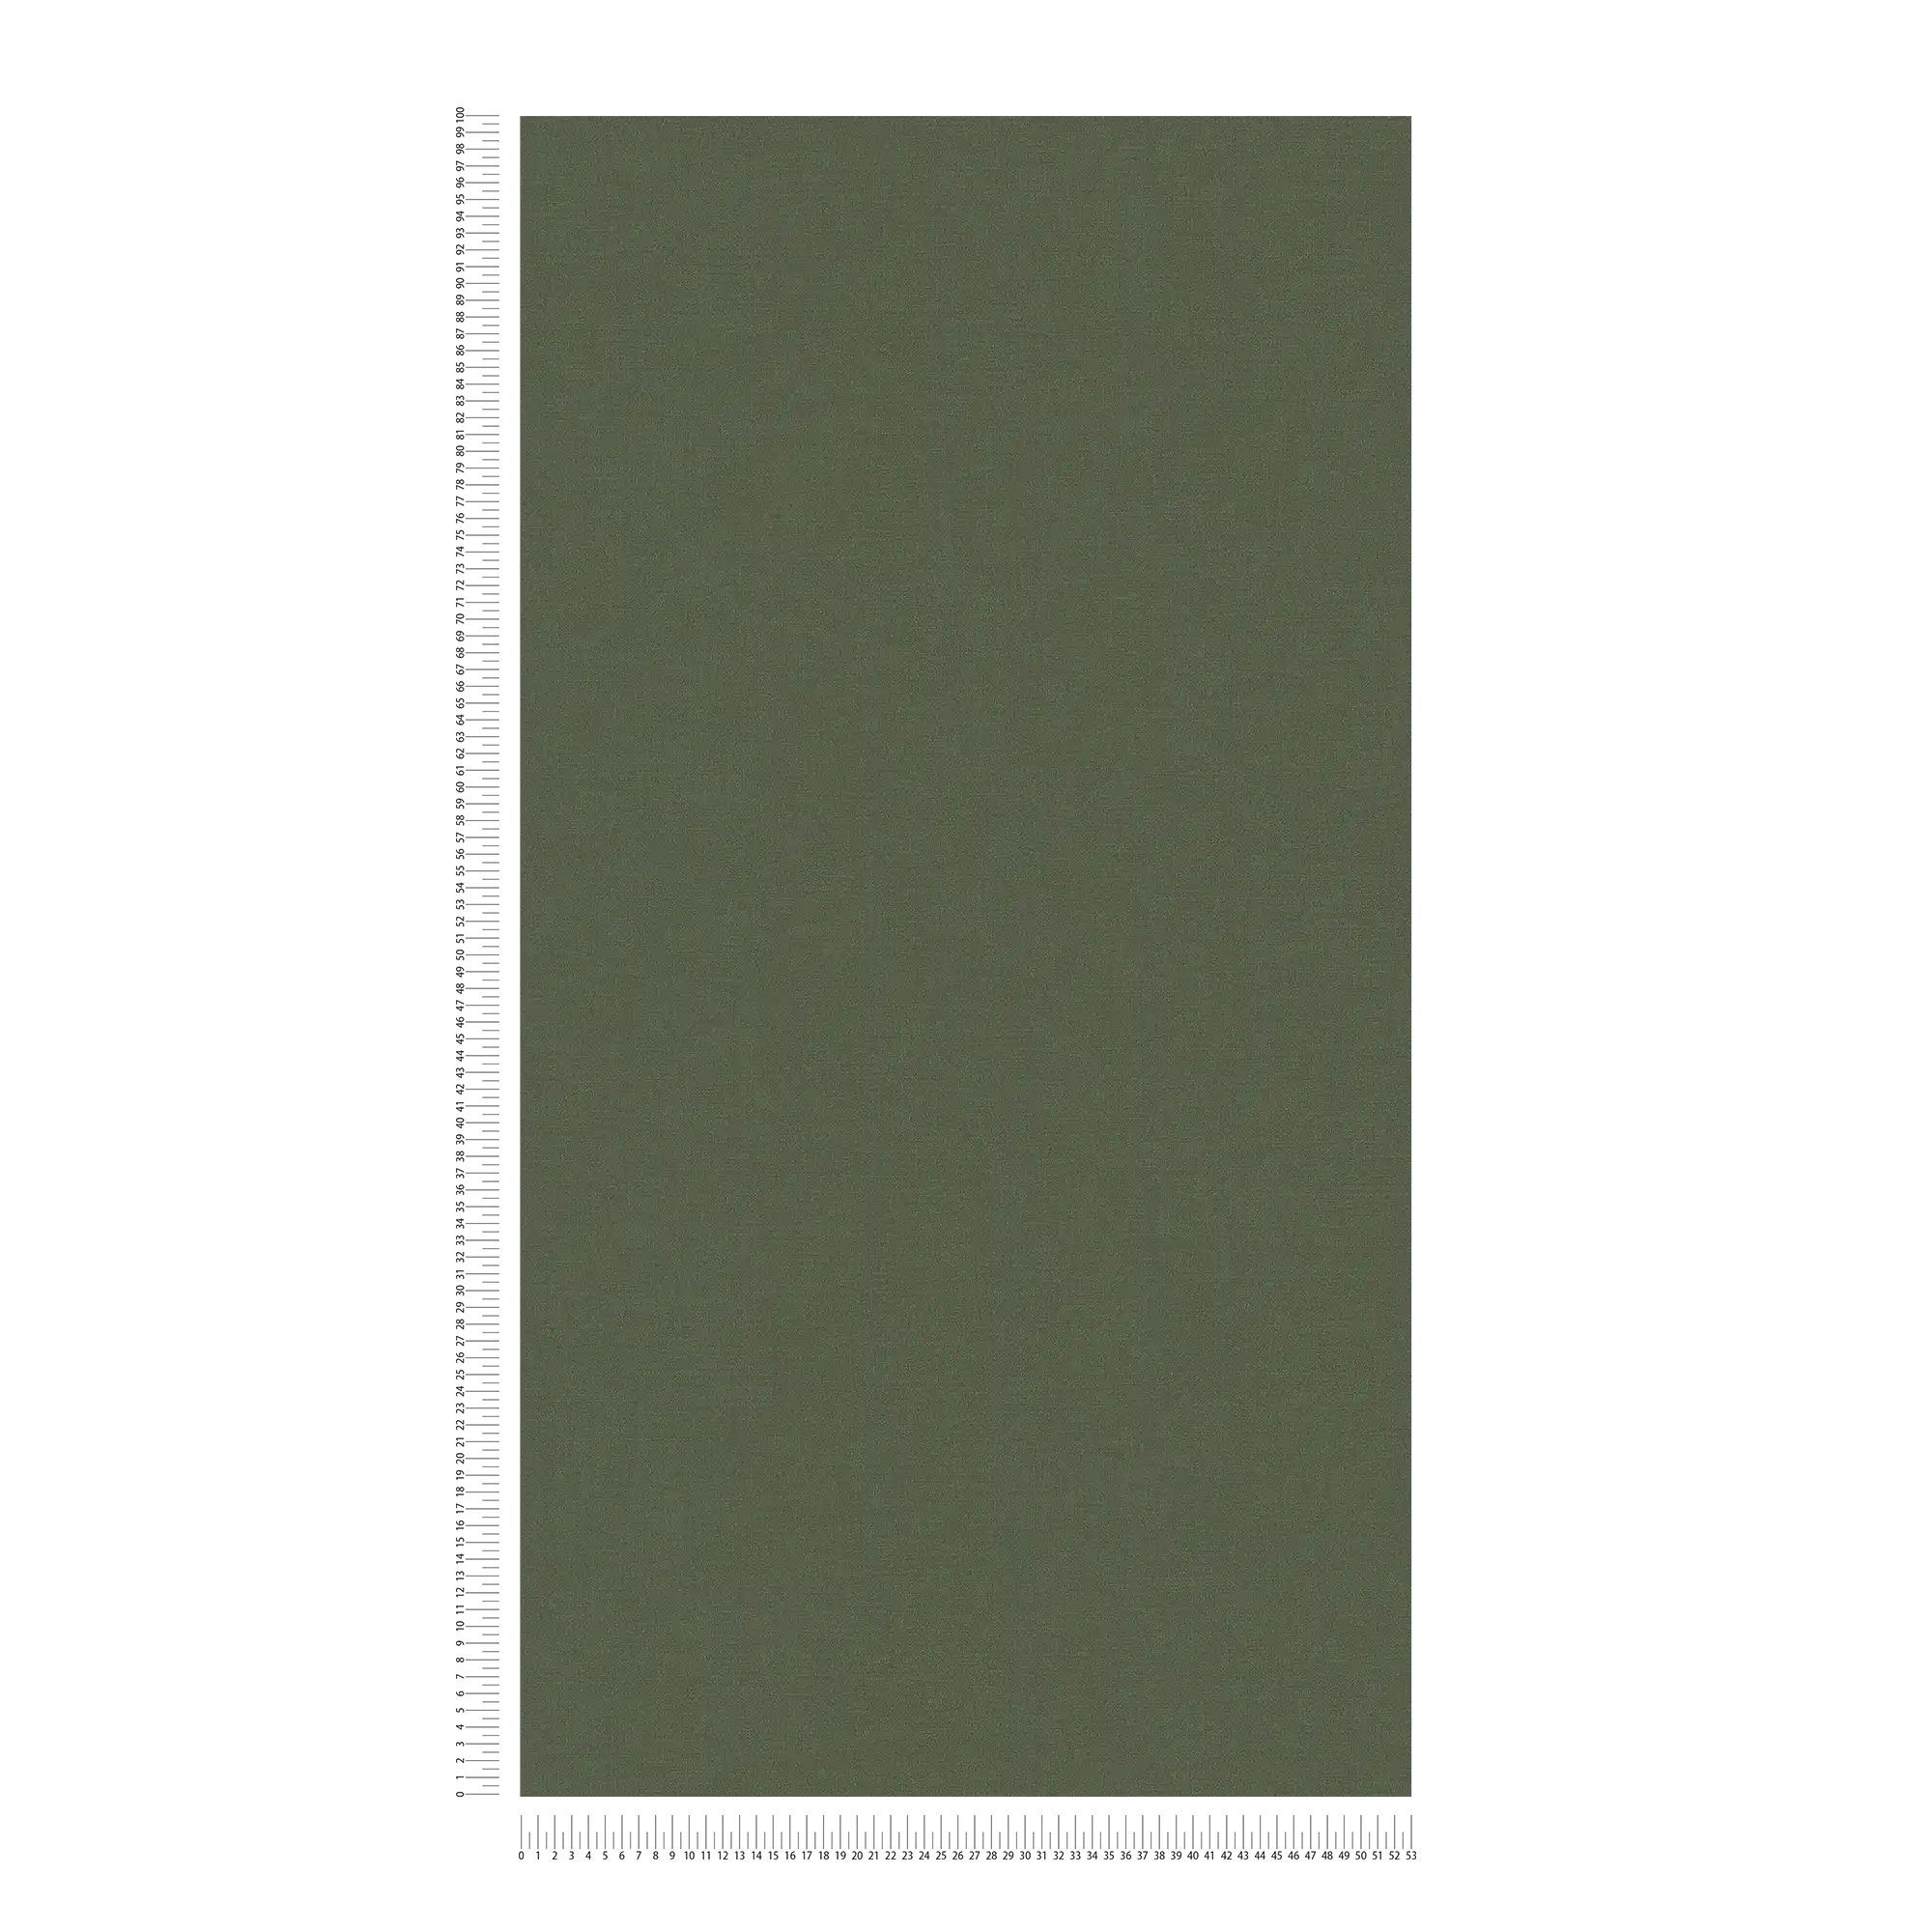             Papier peint intissé uni aux couleurs vives - vert
        